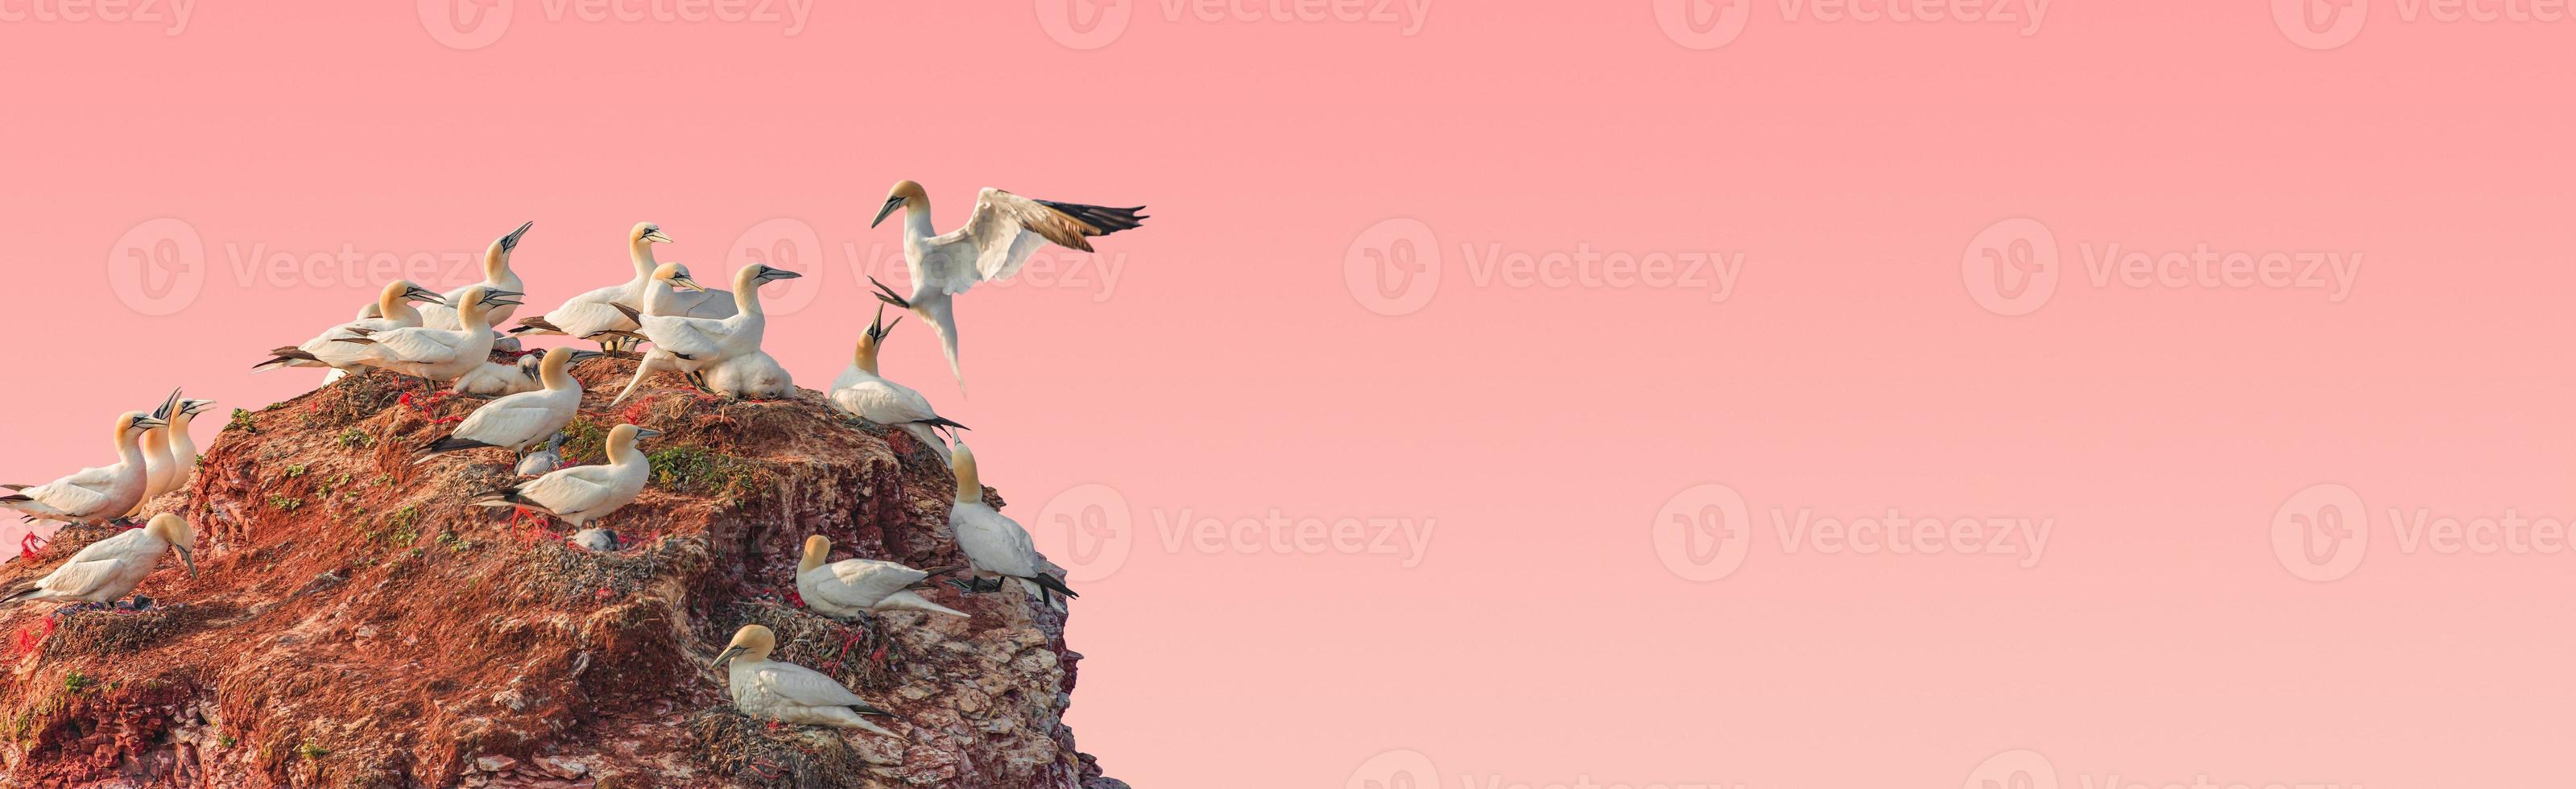 Banner mit einer Rookery von schönen Nordatlantik-Tölpelvögeln auf kleiner Felseninsel bei rosigem Sonnenuntergang Himmelsverlaufshintergrund mit Kopienraum für Text, Nahaufnahme, Details. Liebe und Glamour-Konzept. foto